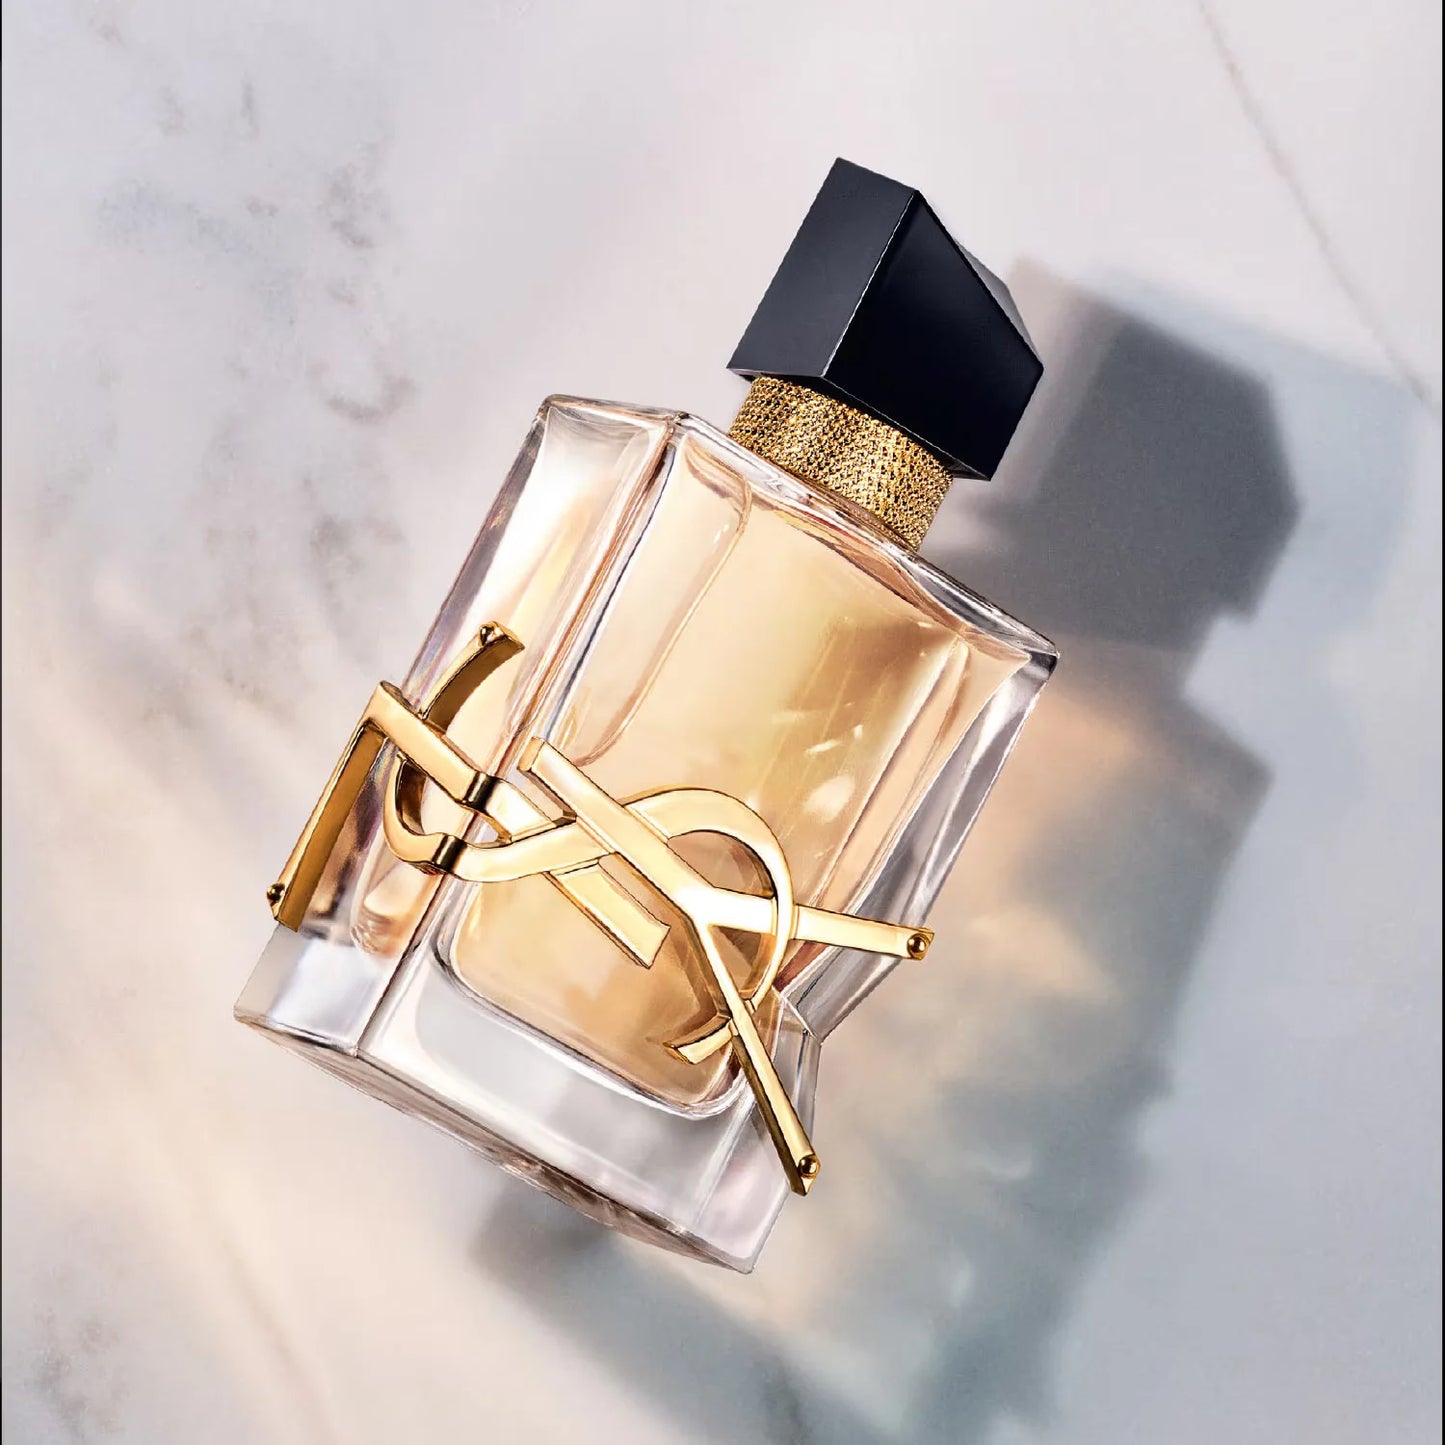 Yves Saint Laurent Libre For Women Eau De Parfum